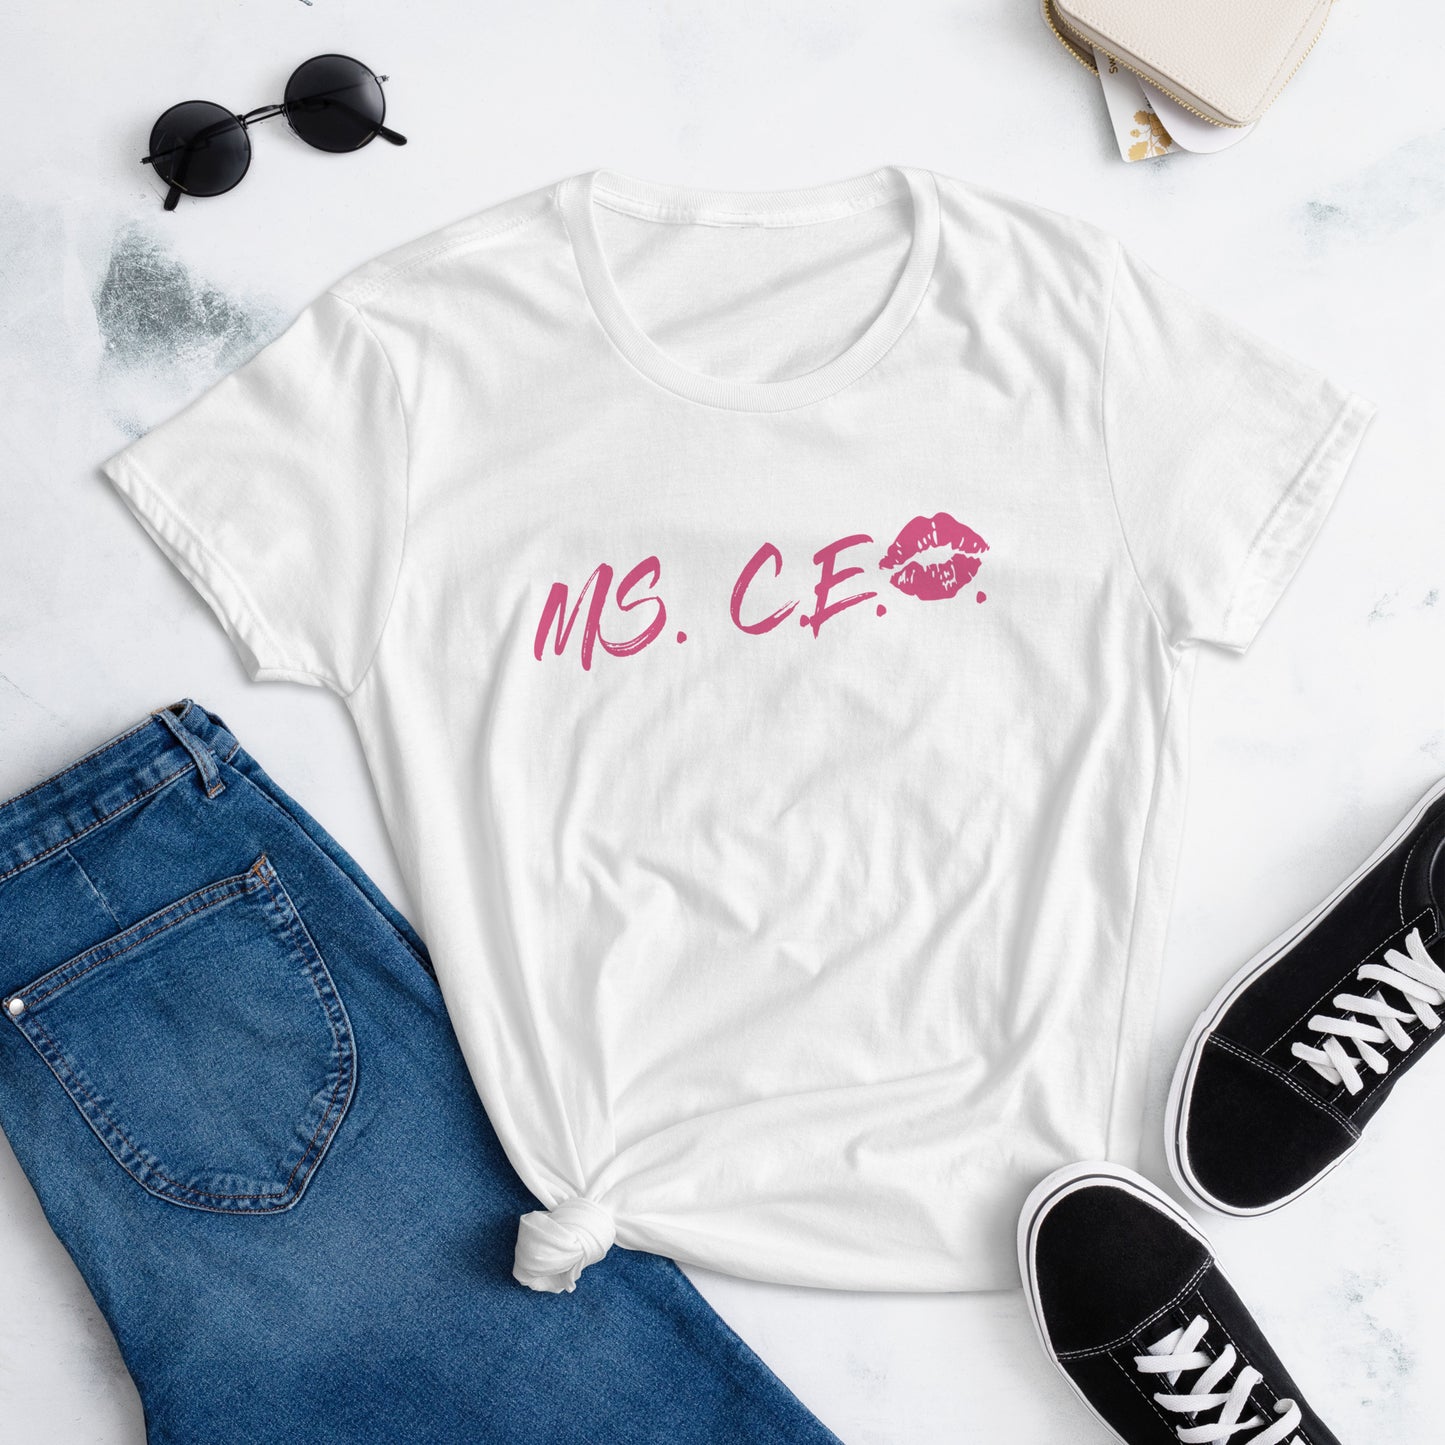 Ms C.E.O. Women's short sleeve t-shirt